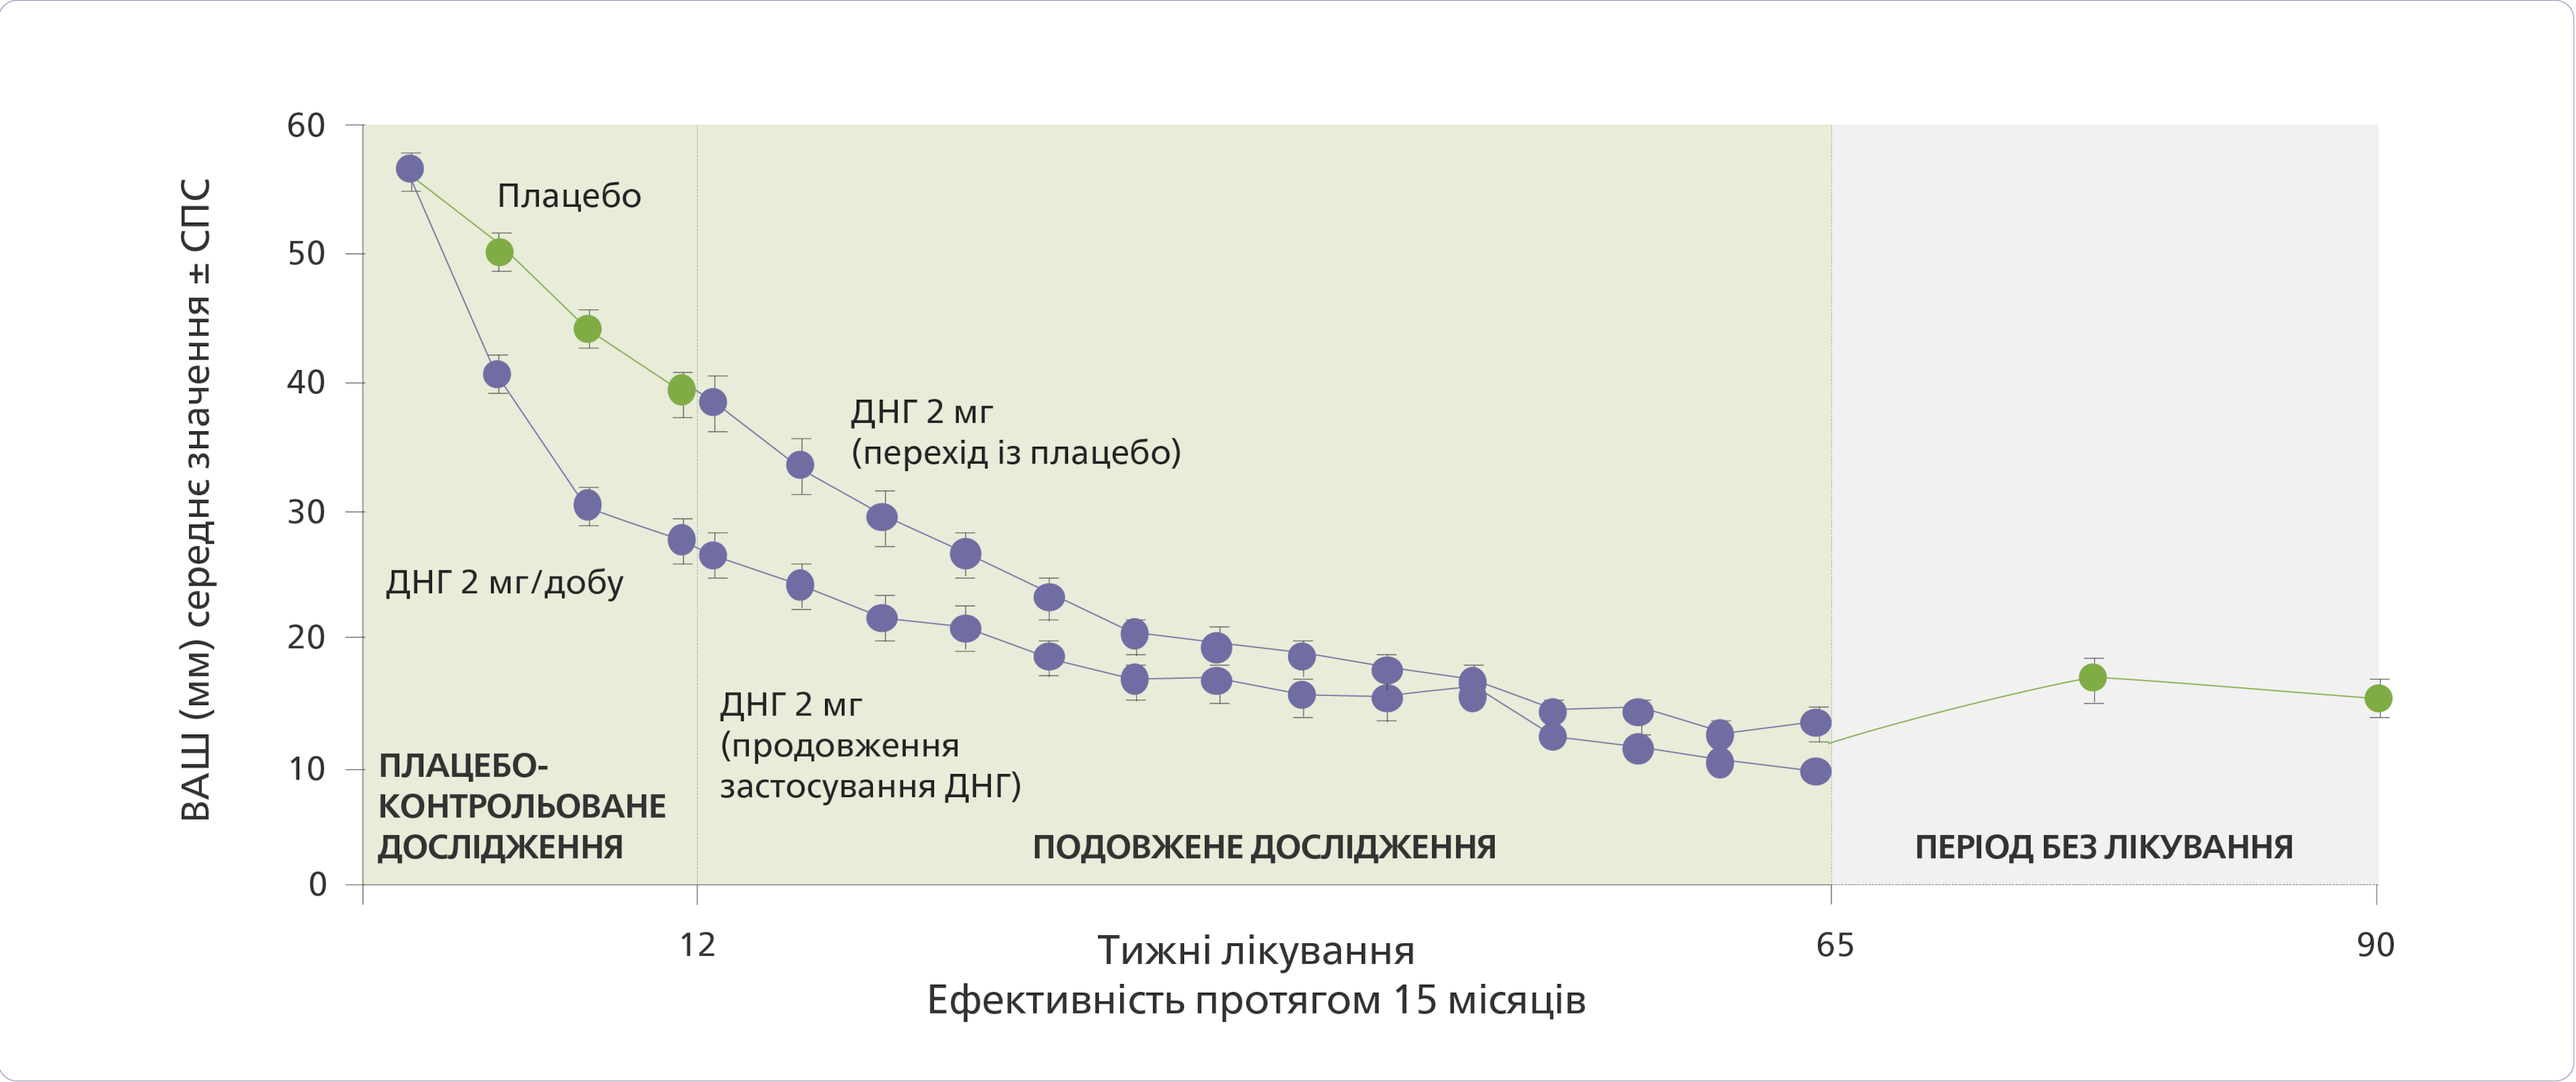 Графік відображає зменшення болю при застосуванні препарату Візан для лікування ендометріозу протягом 15 місяців